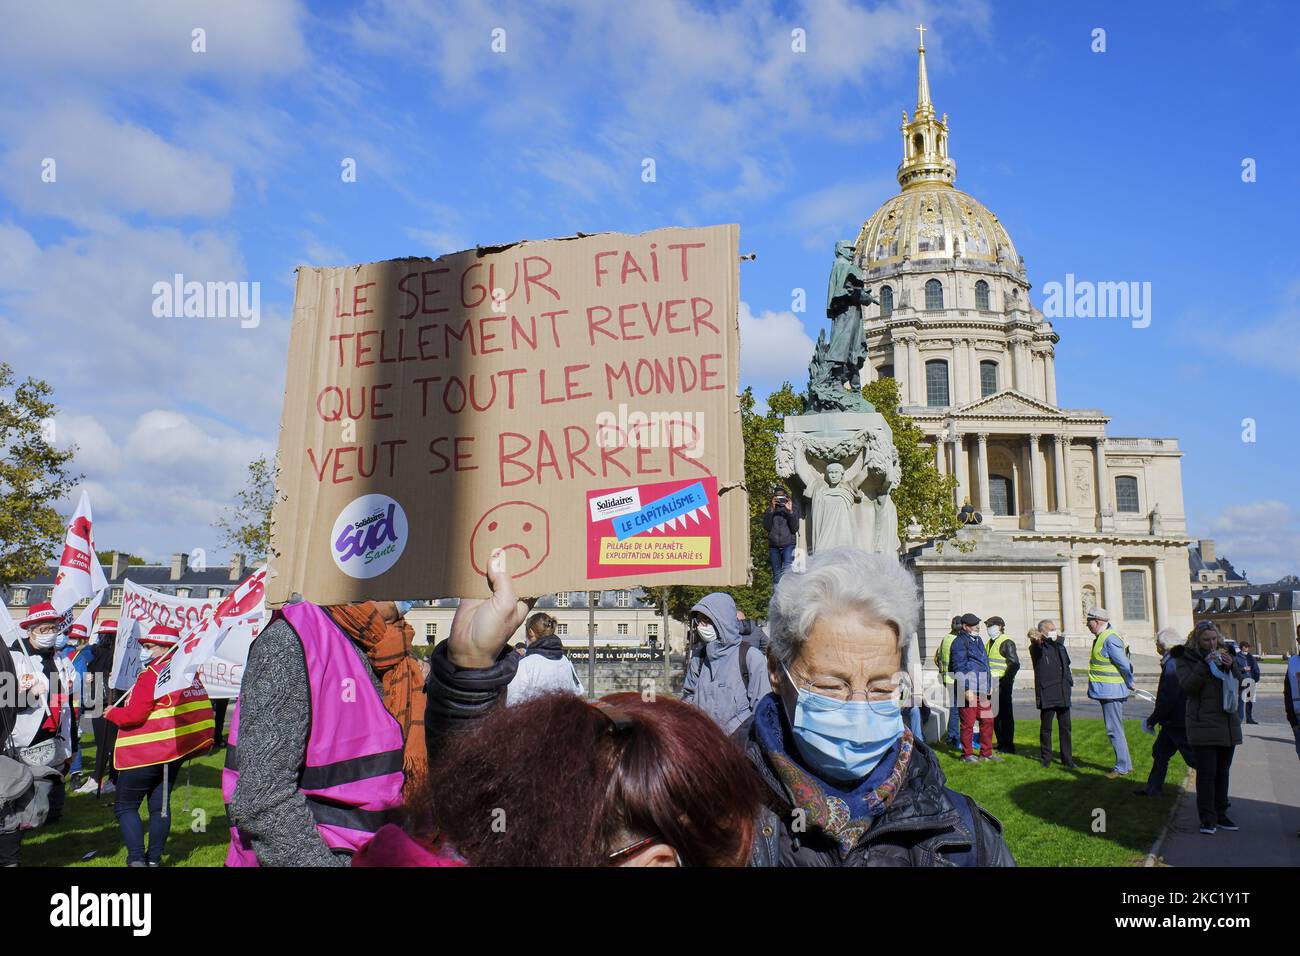 Les travailleurs de la santé participent à une manifestation près du ministère de la solidarité et de la Santé à Paris, en France, sur 14 octobre 2020. Ils exigent de meilleures conditions de travail, une augmentation du nombre de personnel et un soutien accru pour leur secteur. (Photo par Adnan Farzat/NurPhoto) Banque D'Images